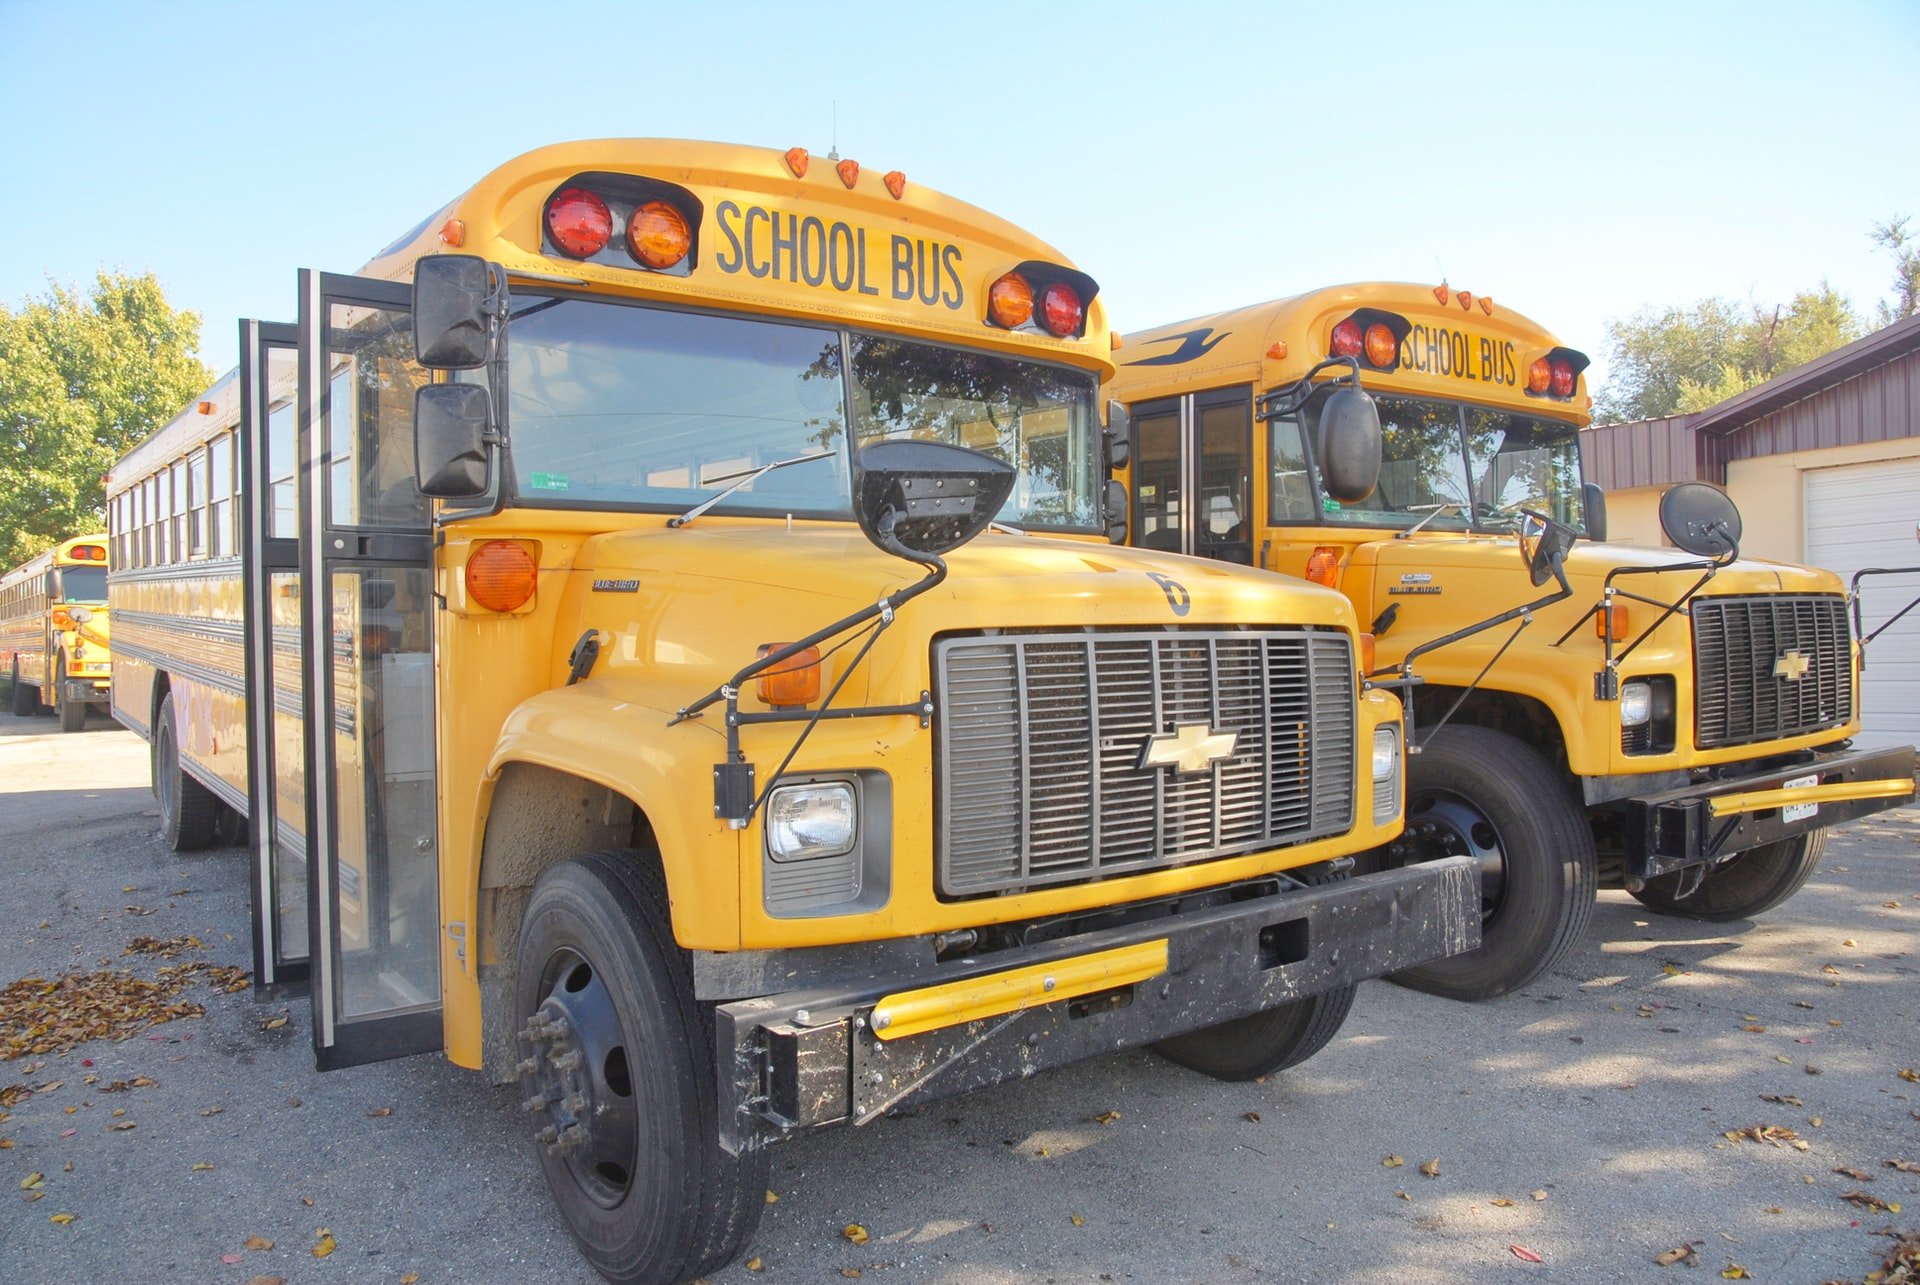 Der Junge wusste nicht, dass es zwei identische Schulbusse gibt | Quelle: Unsplash